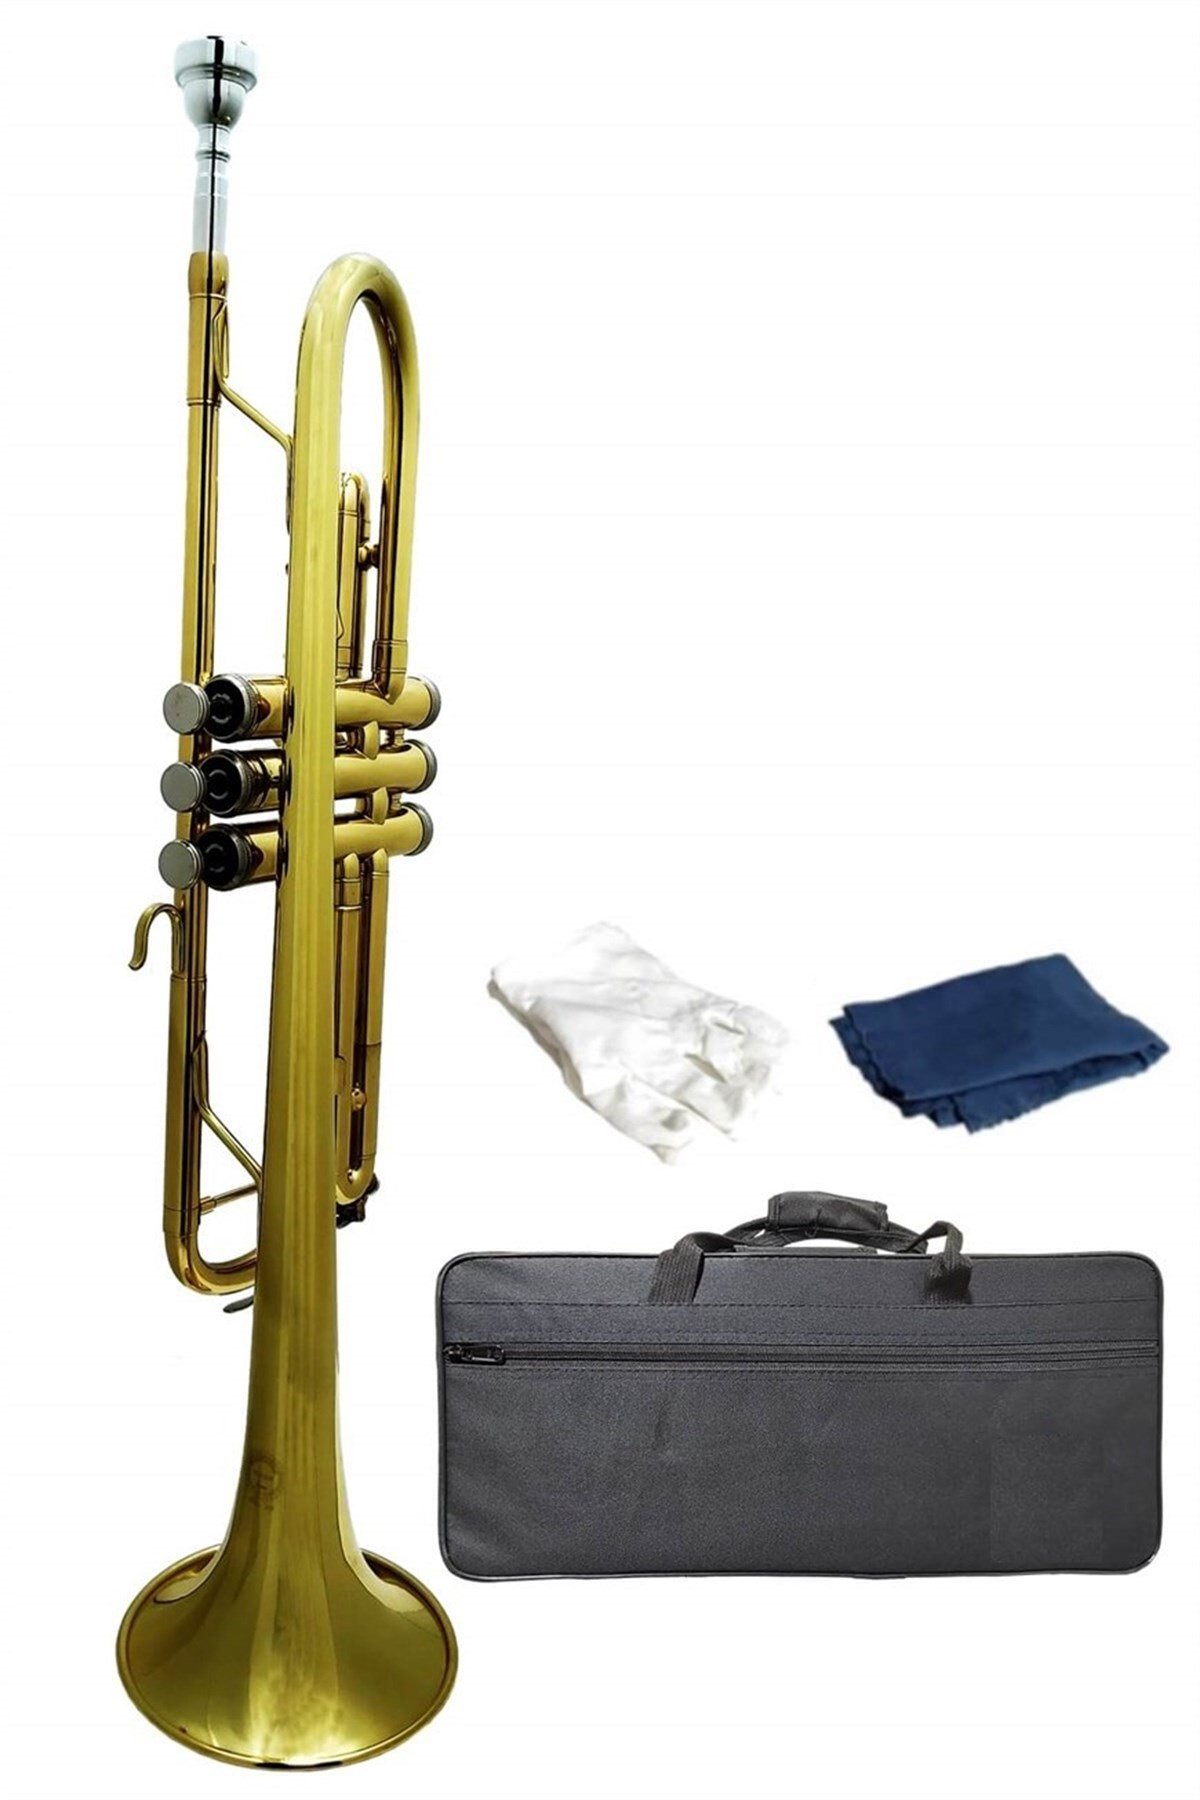 Mitello VA500 Profesyonel Bb Trompet Si Bemol (Sib,Victor VA500 Profesyonel  Bb Trompet Si Bemol (Sib) Profesyonel Çantalı ,Trompet,turumpet,En Uygun Trompet  Fiyatları ve Modelleri, Trompet çeşitleri,Kaliteli Trompet Modelleri,